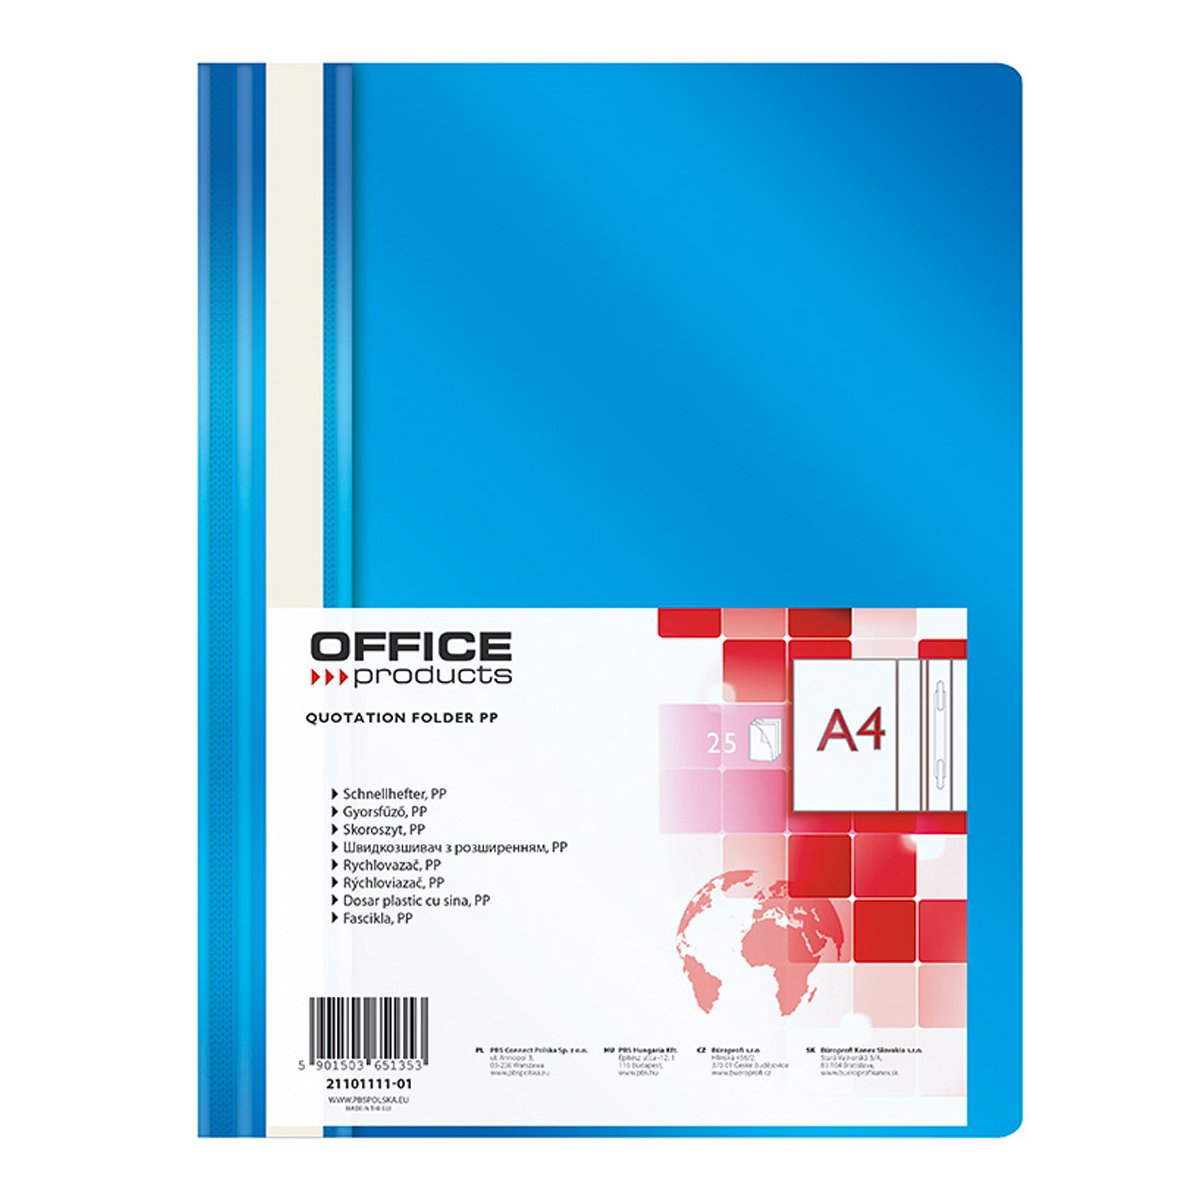 Office Products rychlovazač, A4, PP, 100/170 μm, modrý - 25ks